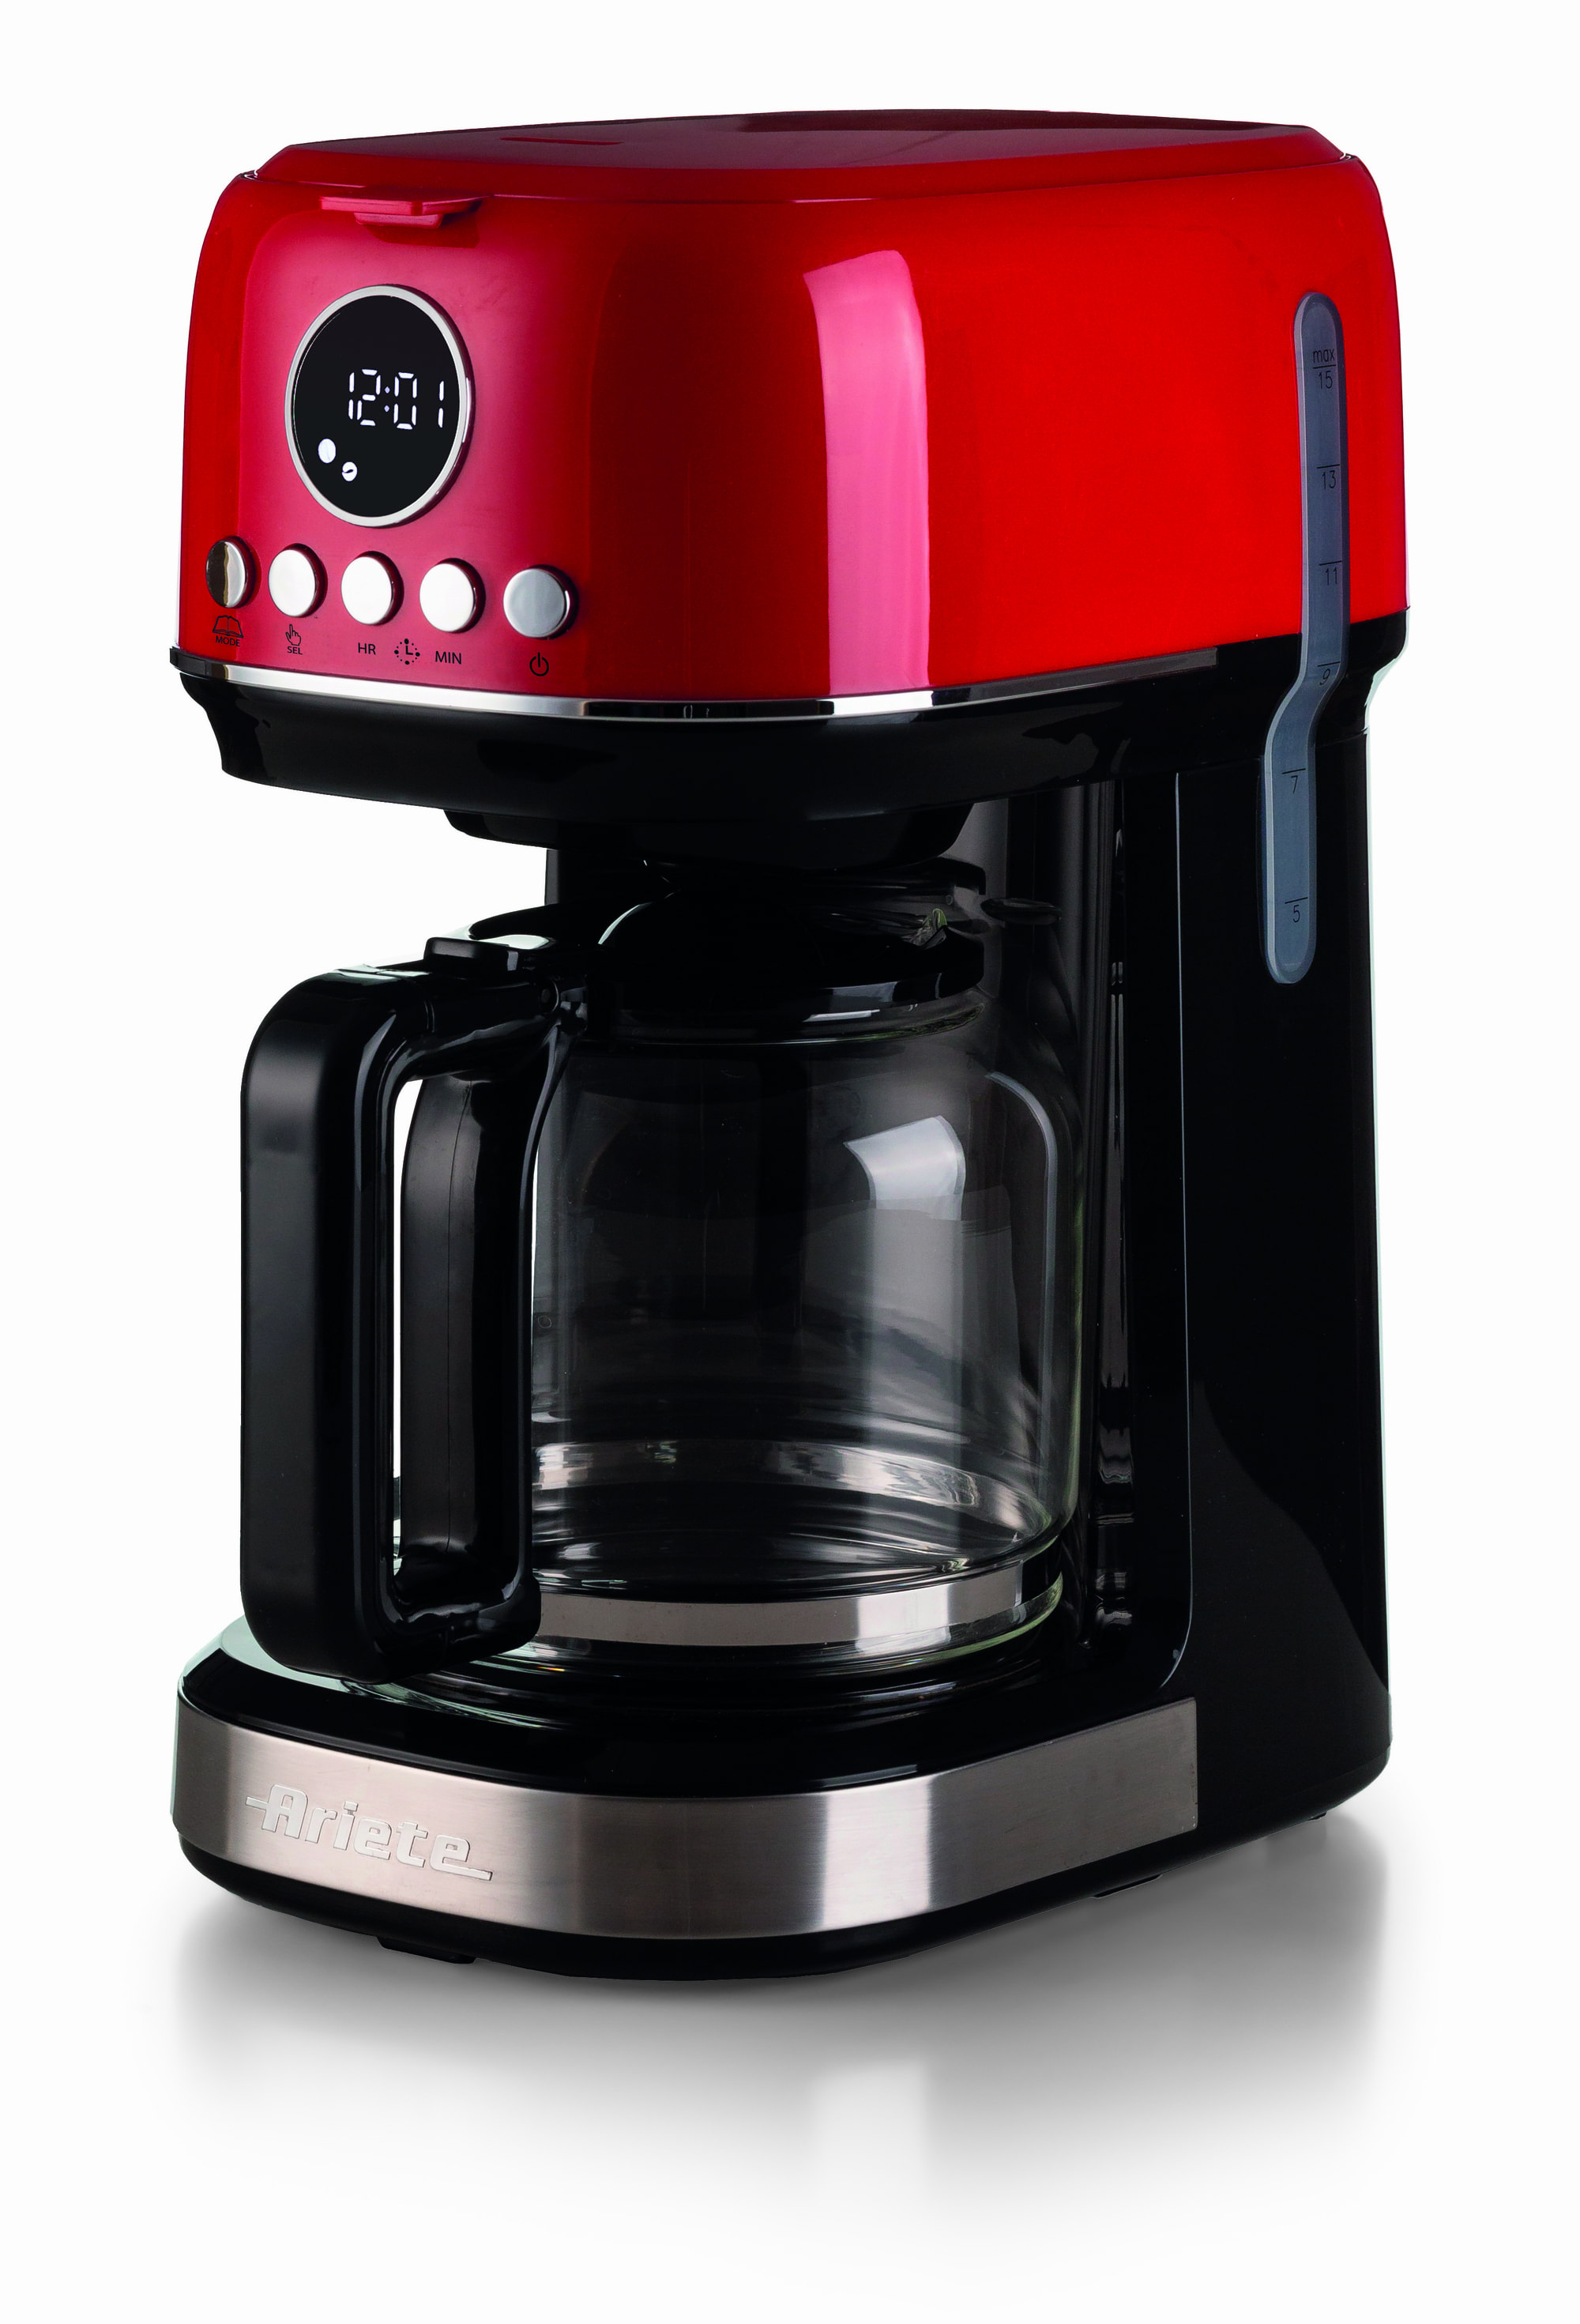 Image of Ariete 1396 Macchina da caffè con filtro Moderna, Caffè americano, Capacità fino a 15 tazze, Base riscaldante, Display LCD, Filtri estraibili e lavabili, Rosso